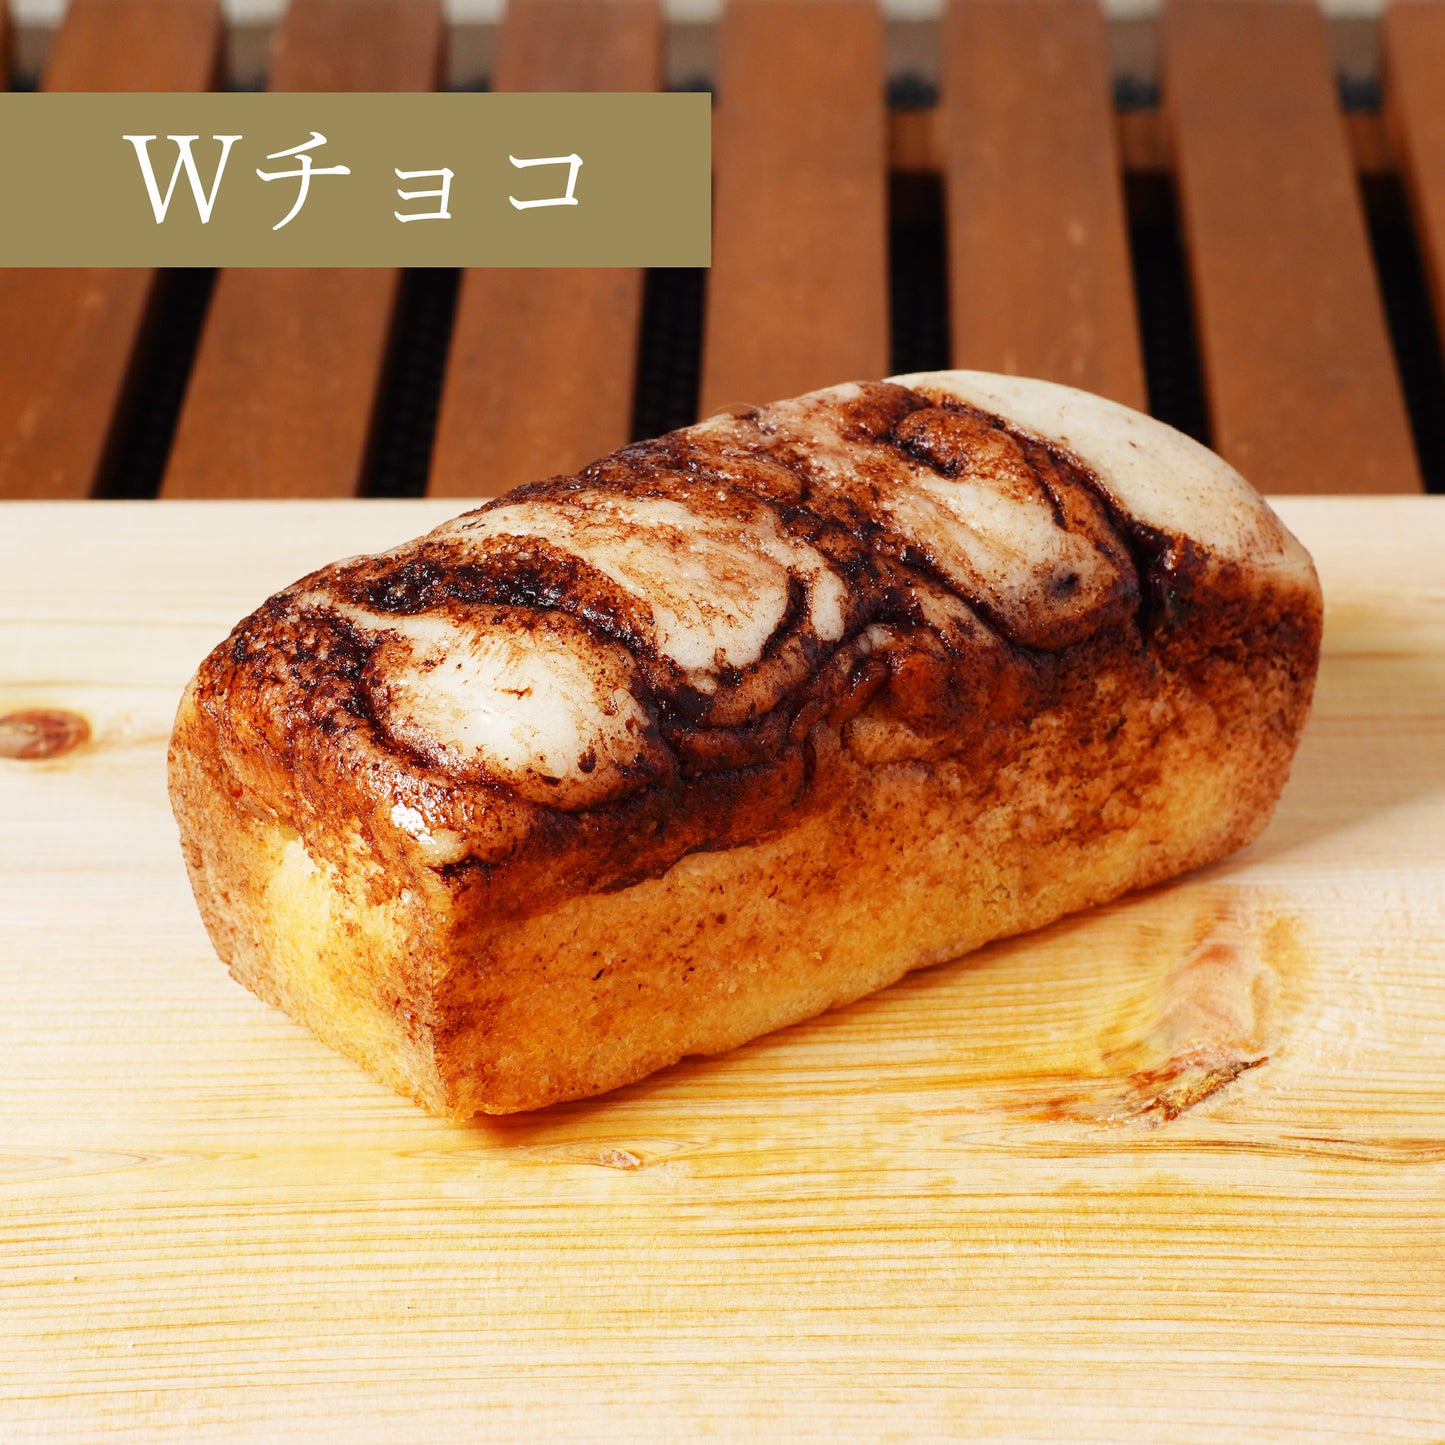 ミニ米粉食パン6種セット